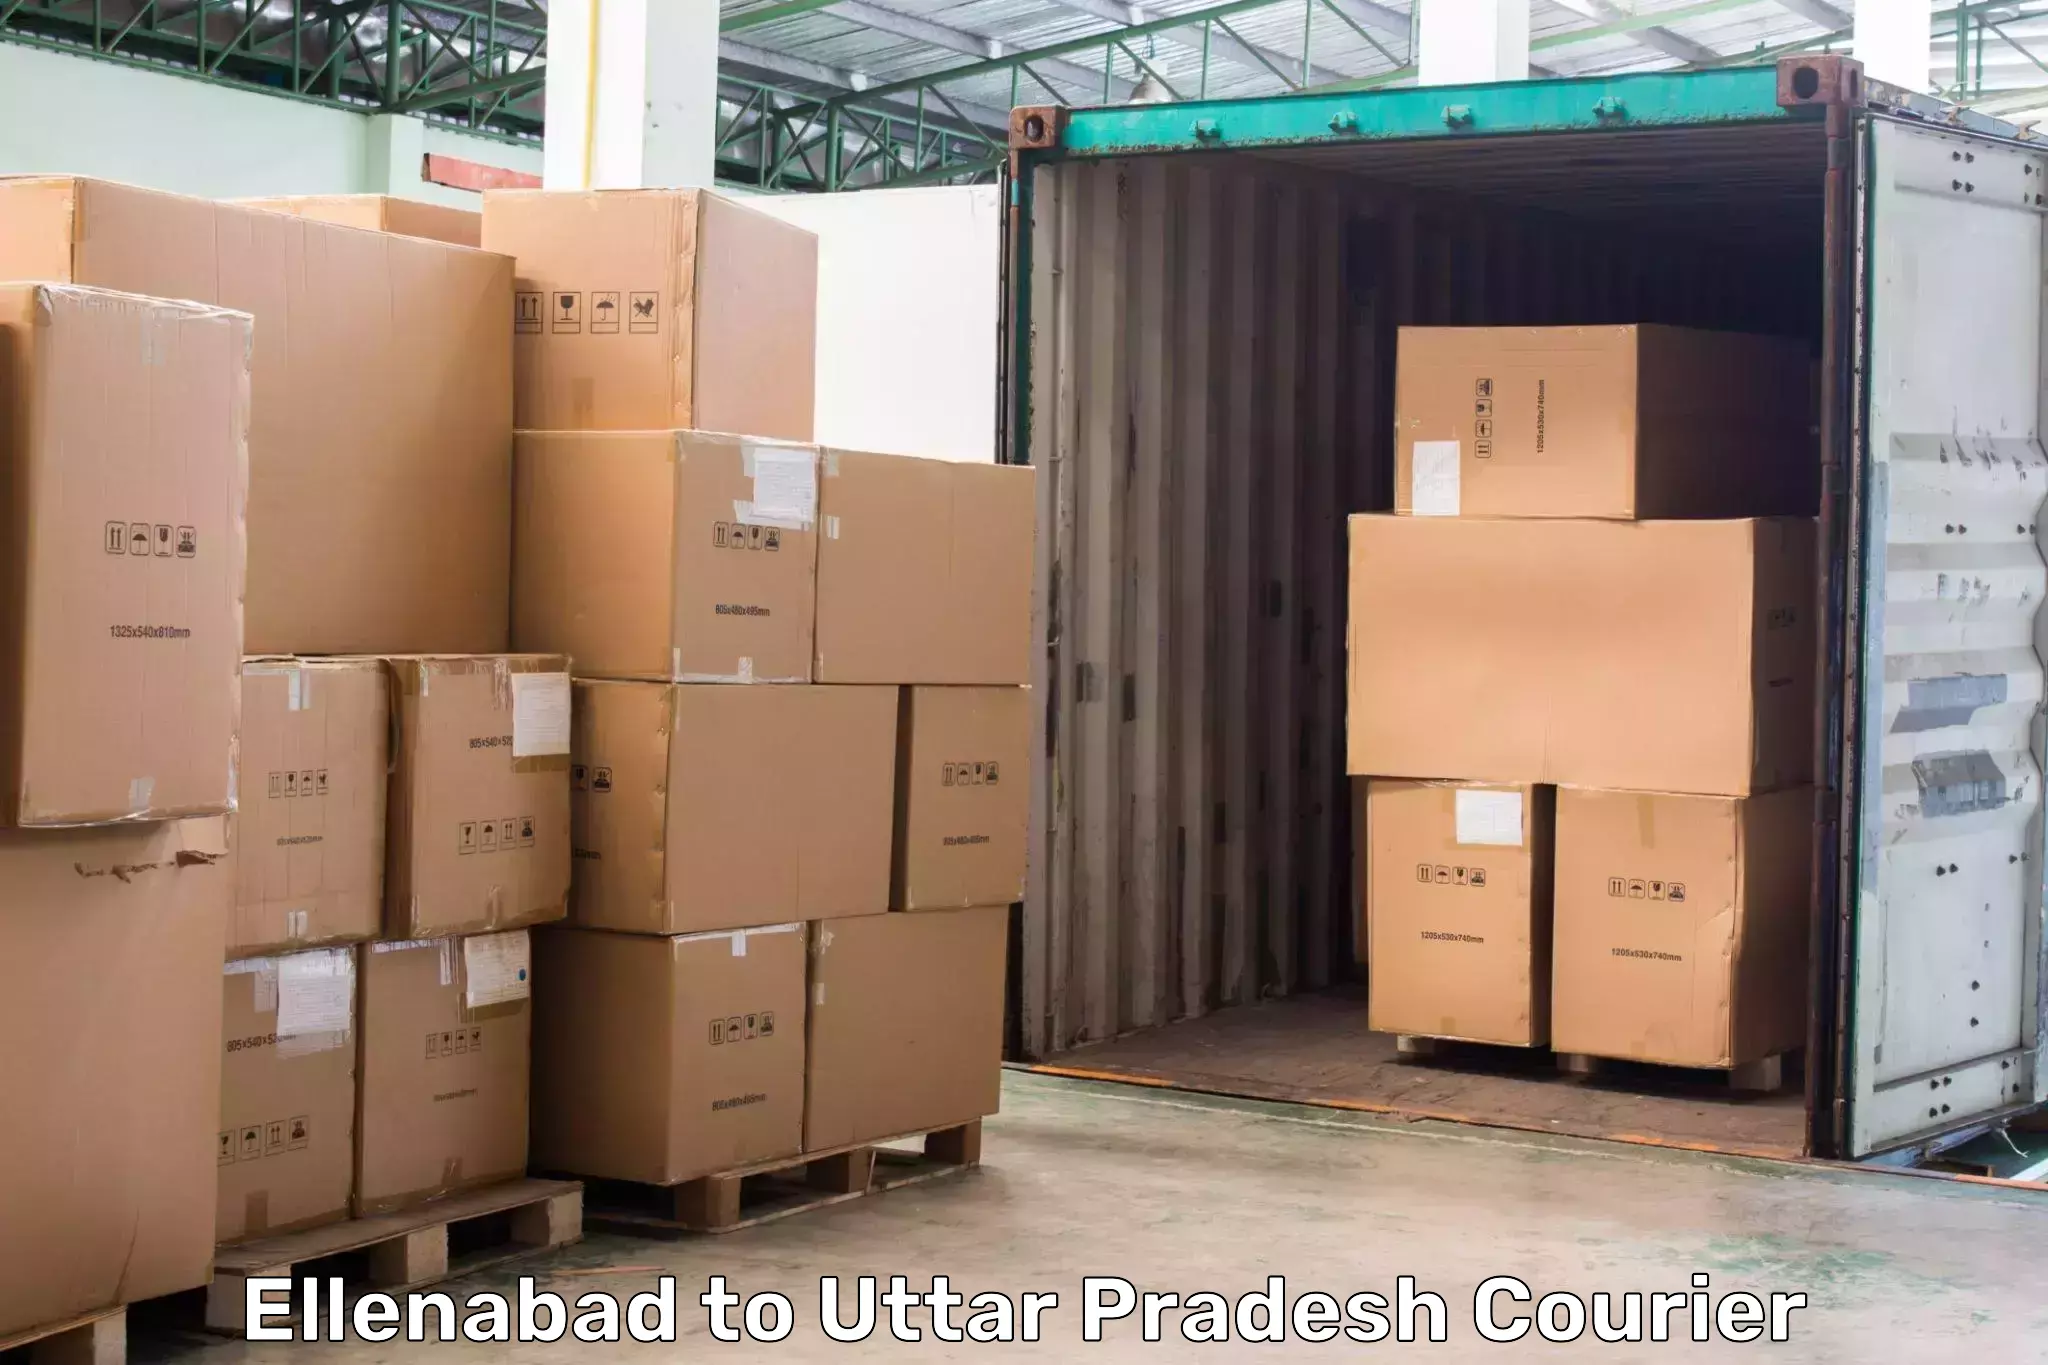 Medical delivery services Ellenabad to Gorakhpur